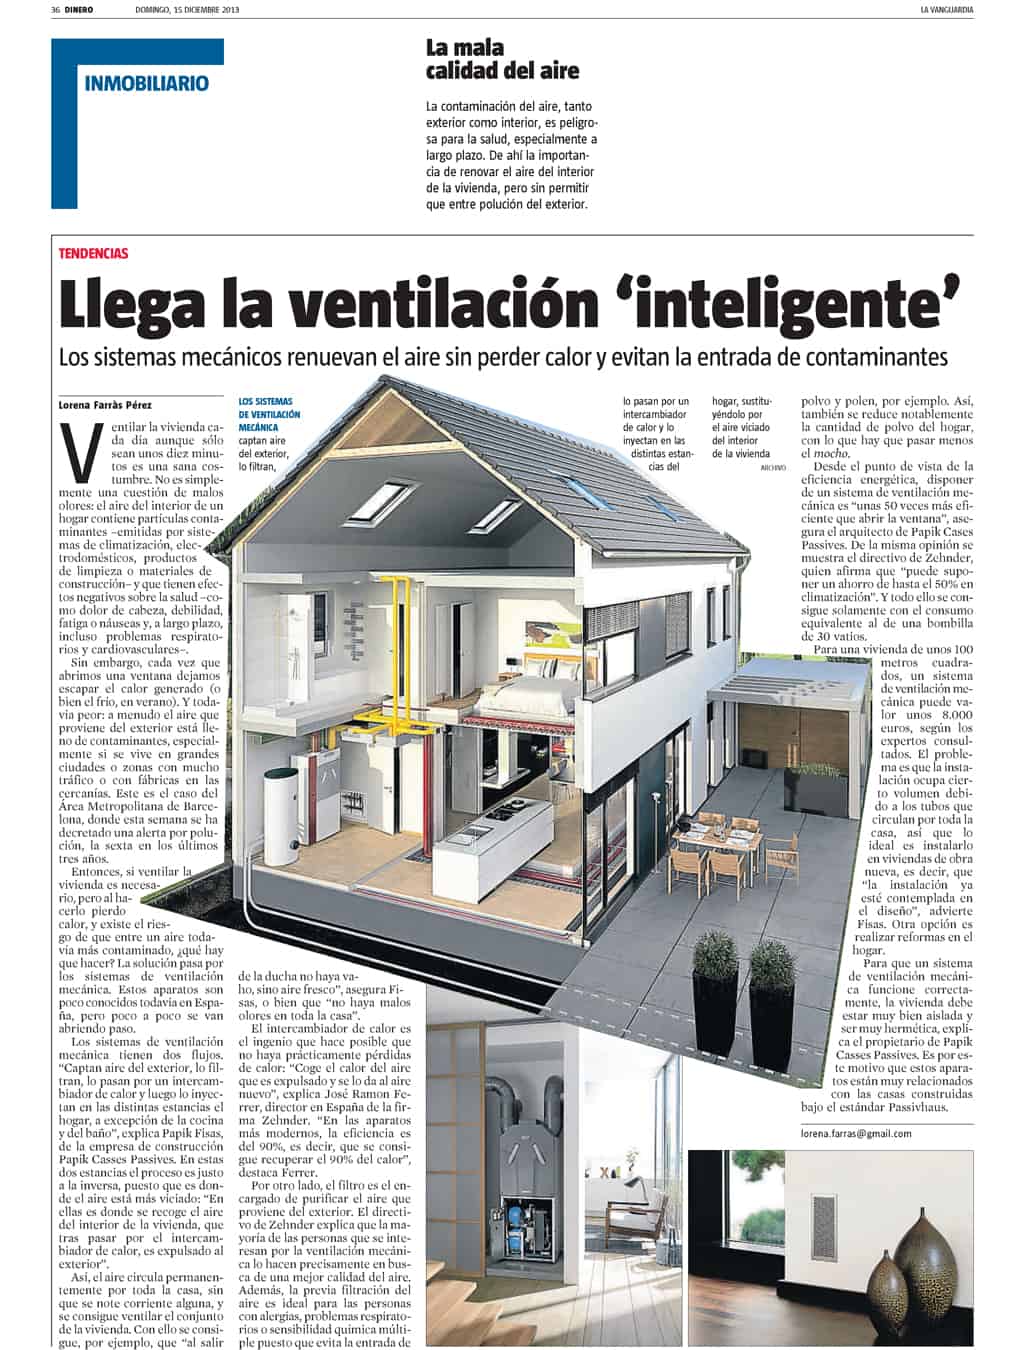 Llega la ventilación inteligente – La Vanguardia